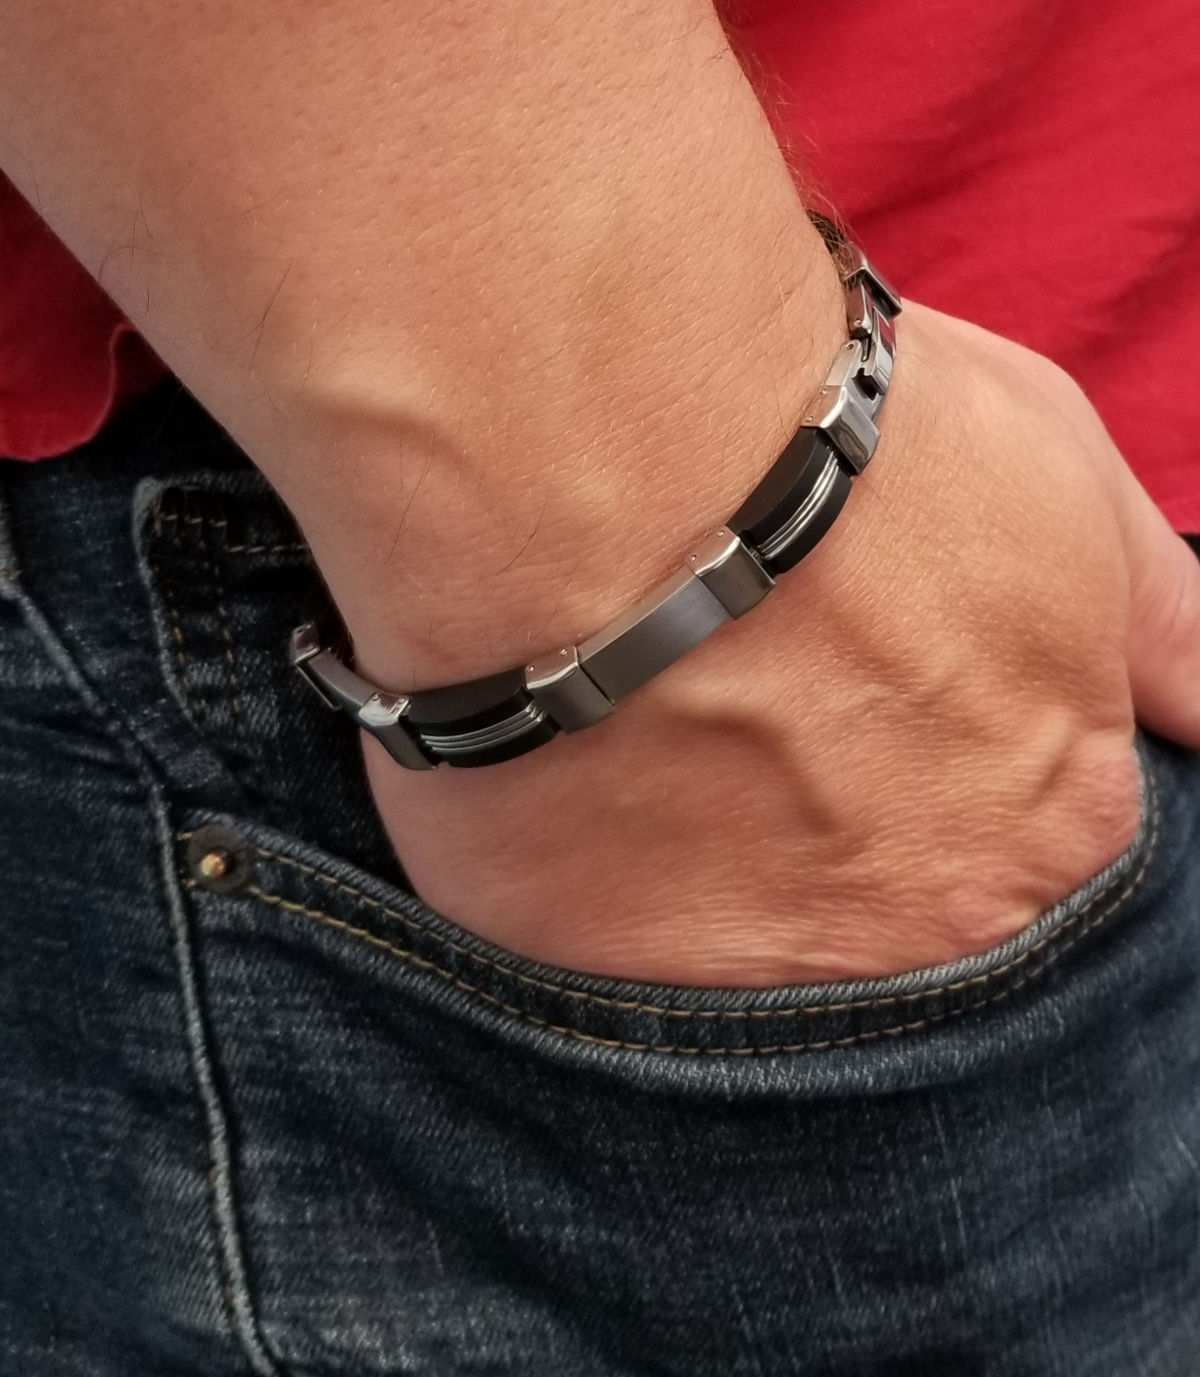 Men's stainless steel and black alternating link bracelet on model